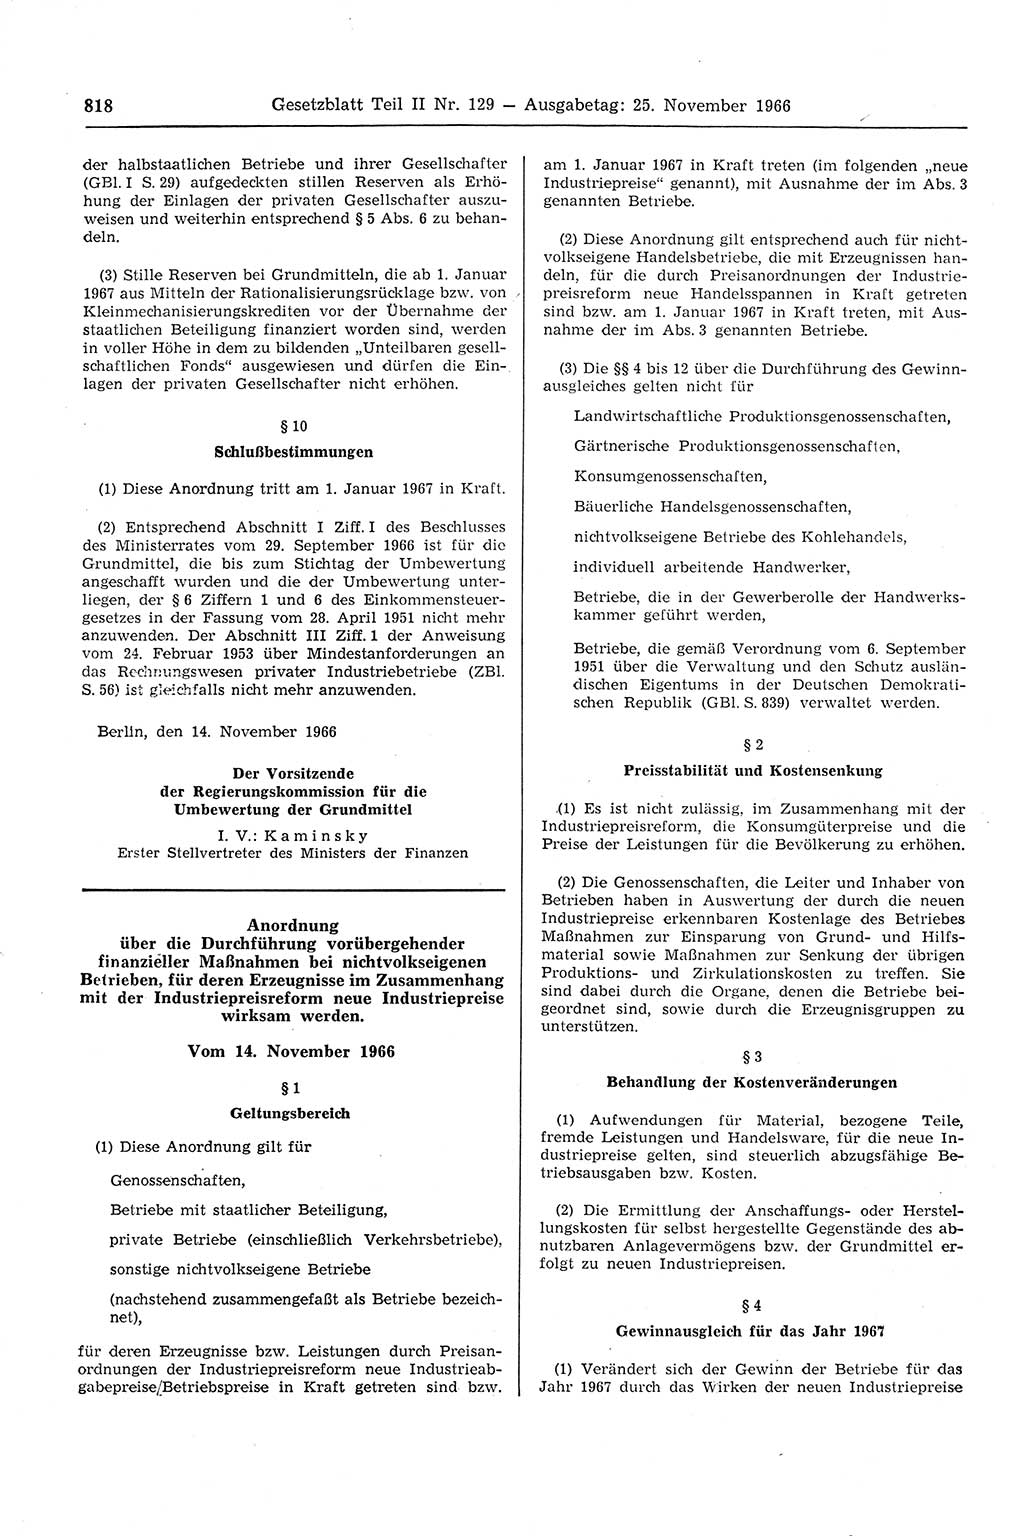 Gesetzblatt (GBl.) der Deutschen Demokratischen Republik (DDR) Teil ⅠⅠ 1966, Seite 818 (GBl. DDR ⅠⅠ 1966, S. 818)